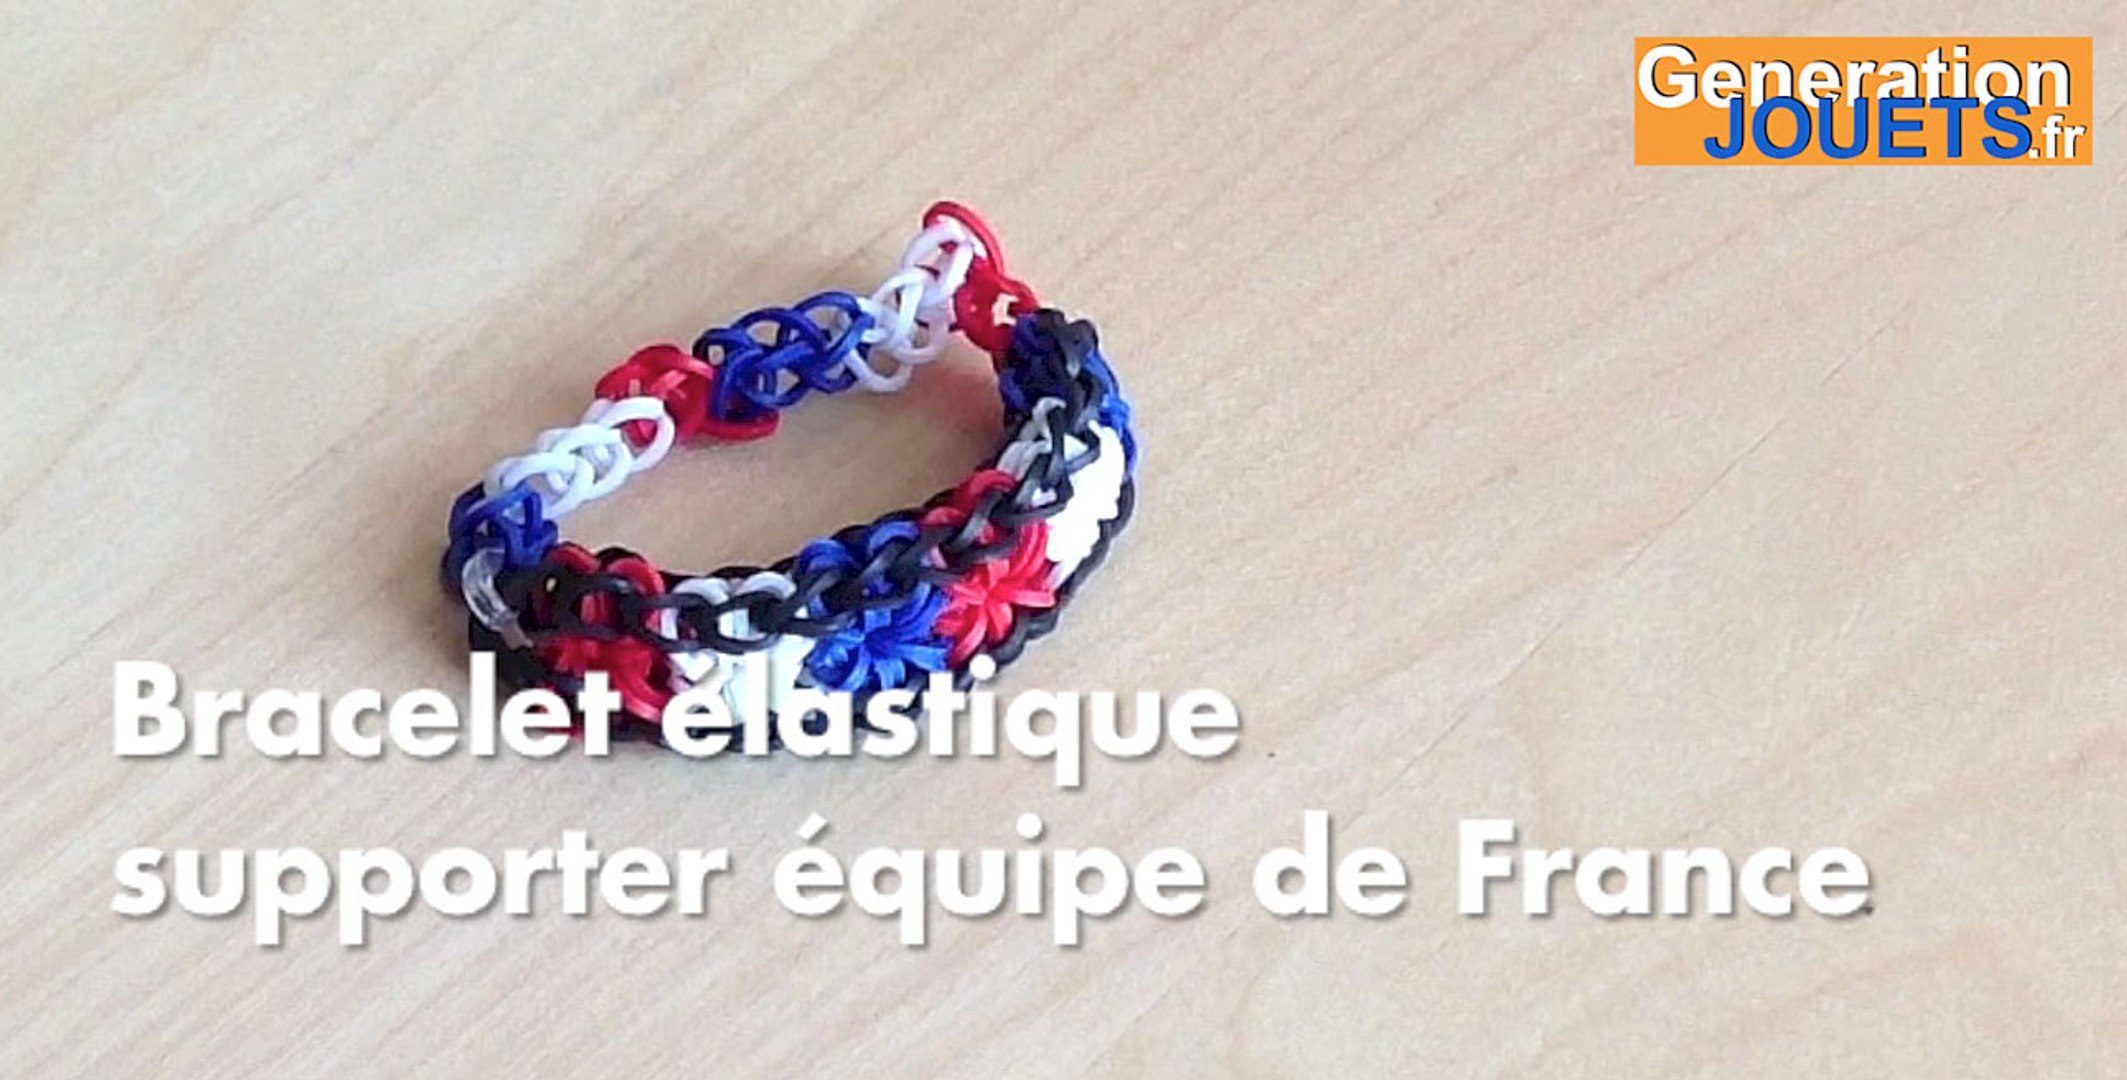 Créer un bracelet élastique supporter équipe de France - Vidéo Dailymotion